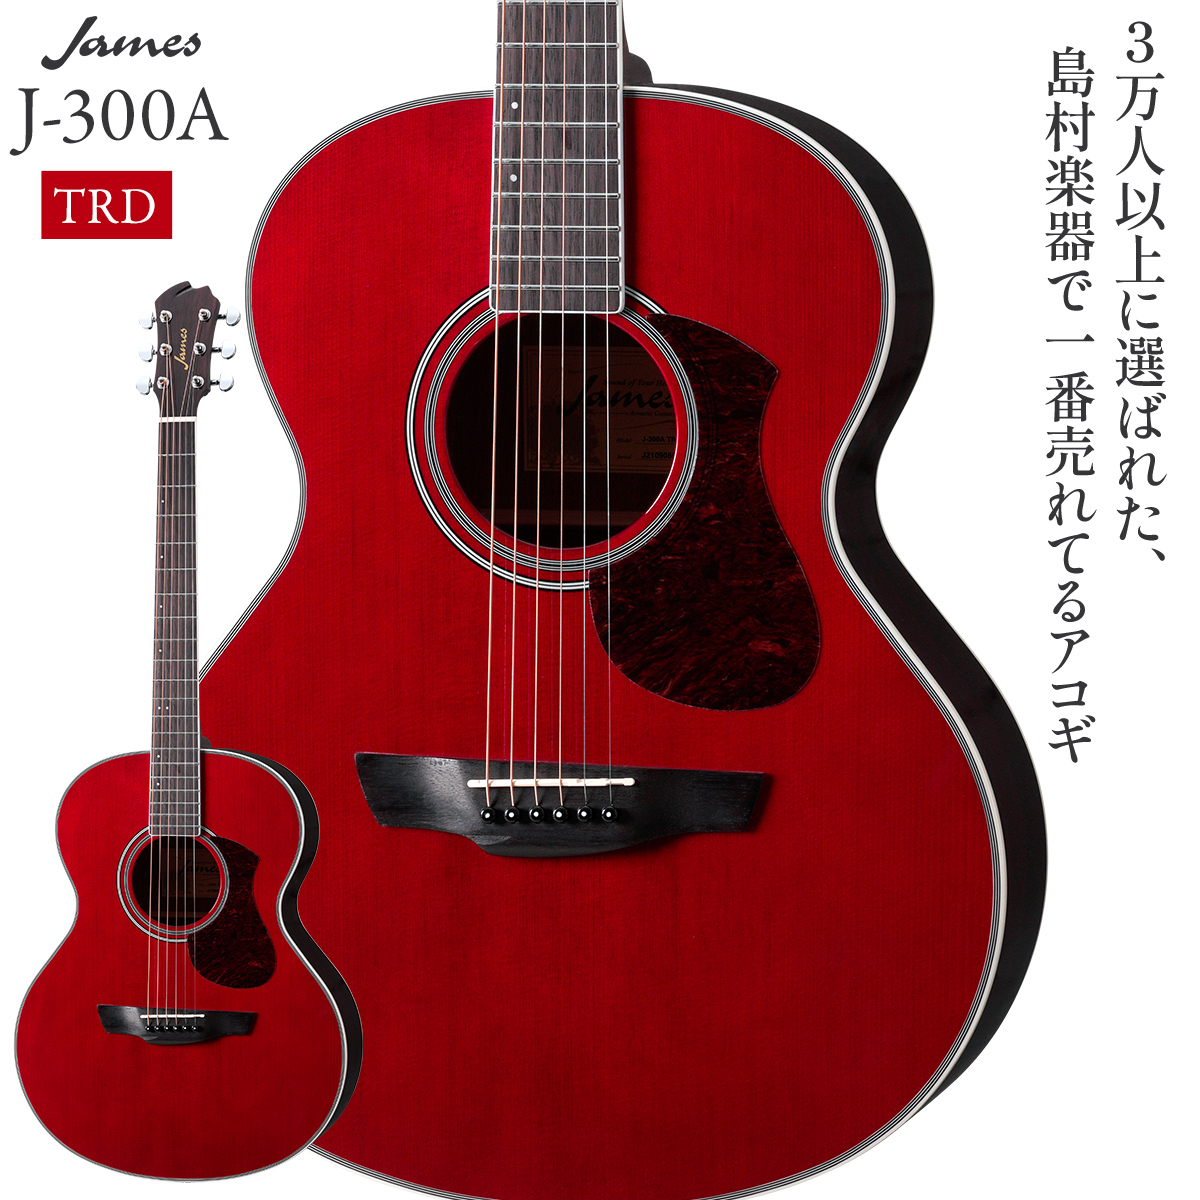 James J-300A TRD (トランスレッド) アコースティックギター ジェームス 【 水戸マイム店 】